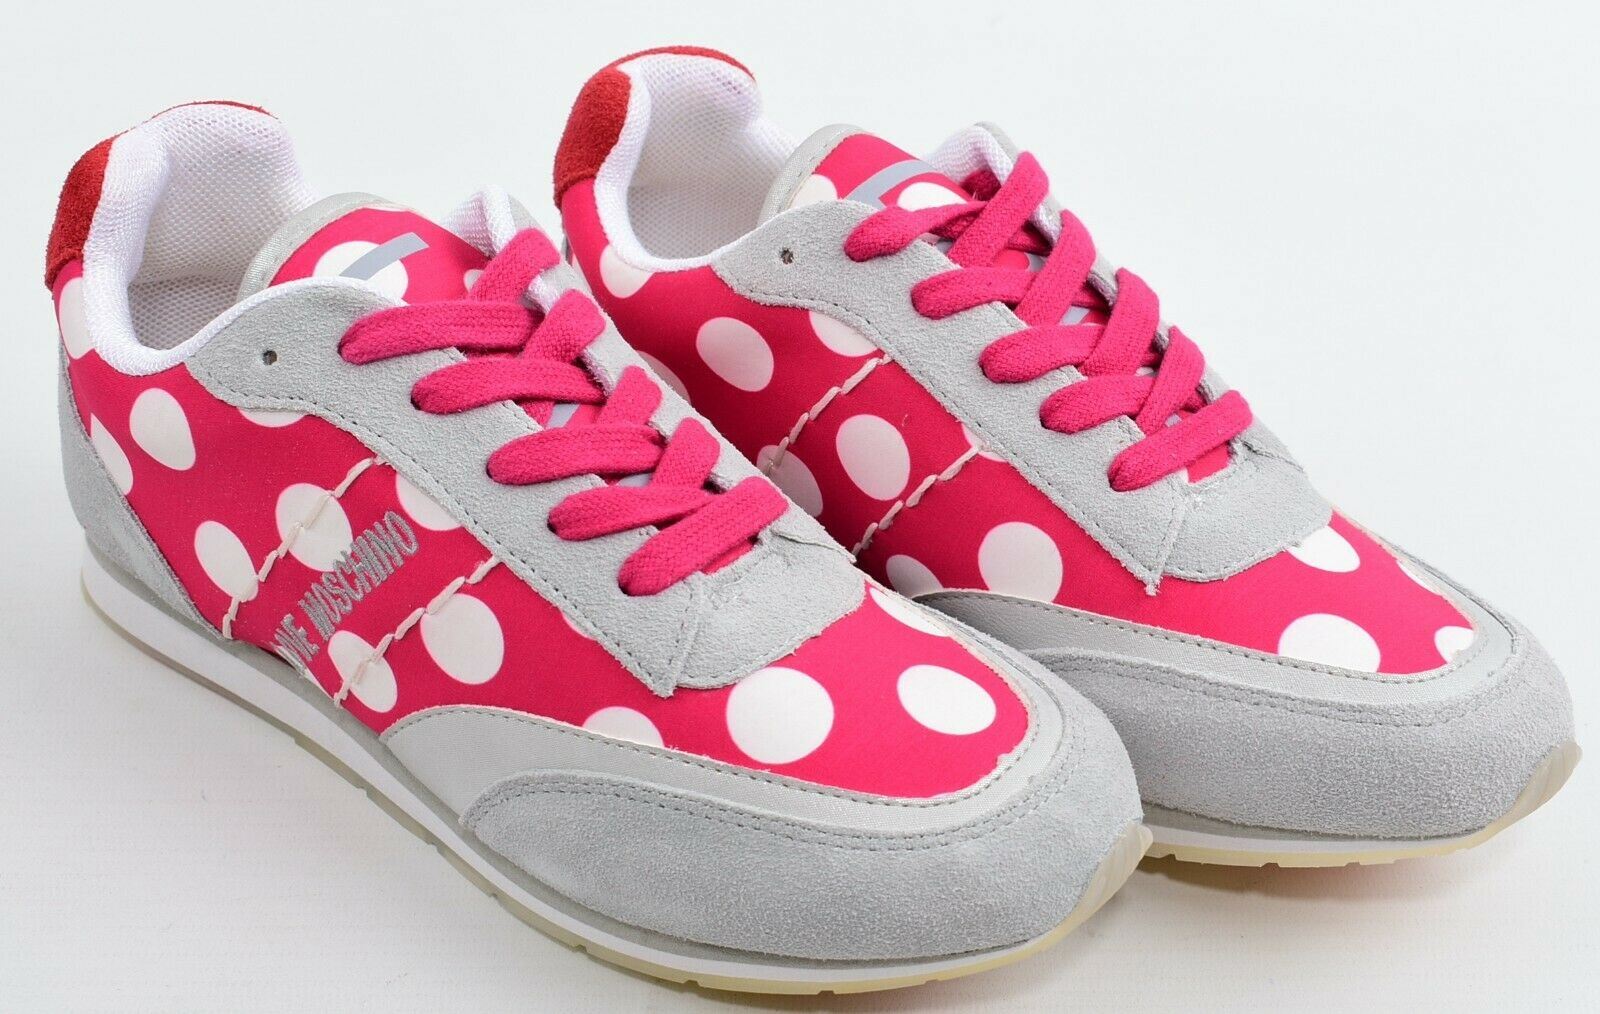 MOSCHINO Women's Grey/Pink Polka Dot Trainers Sneakers, size UK 3 EU 36